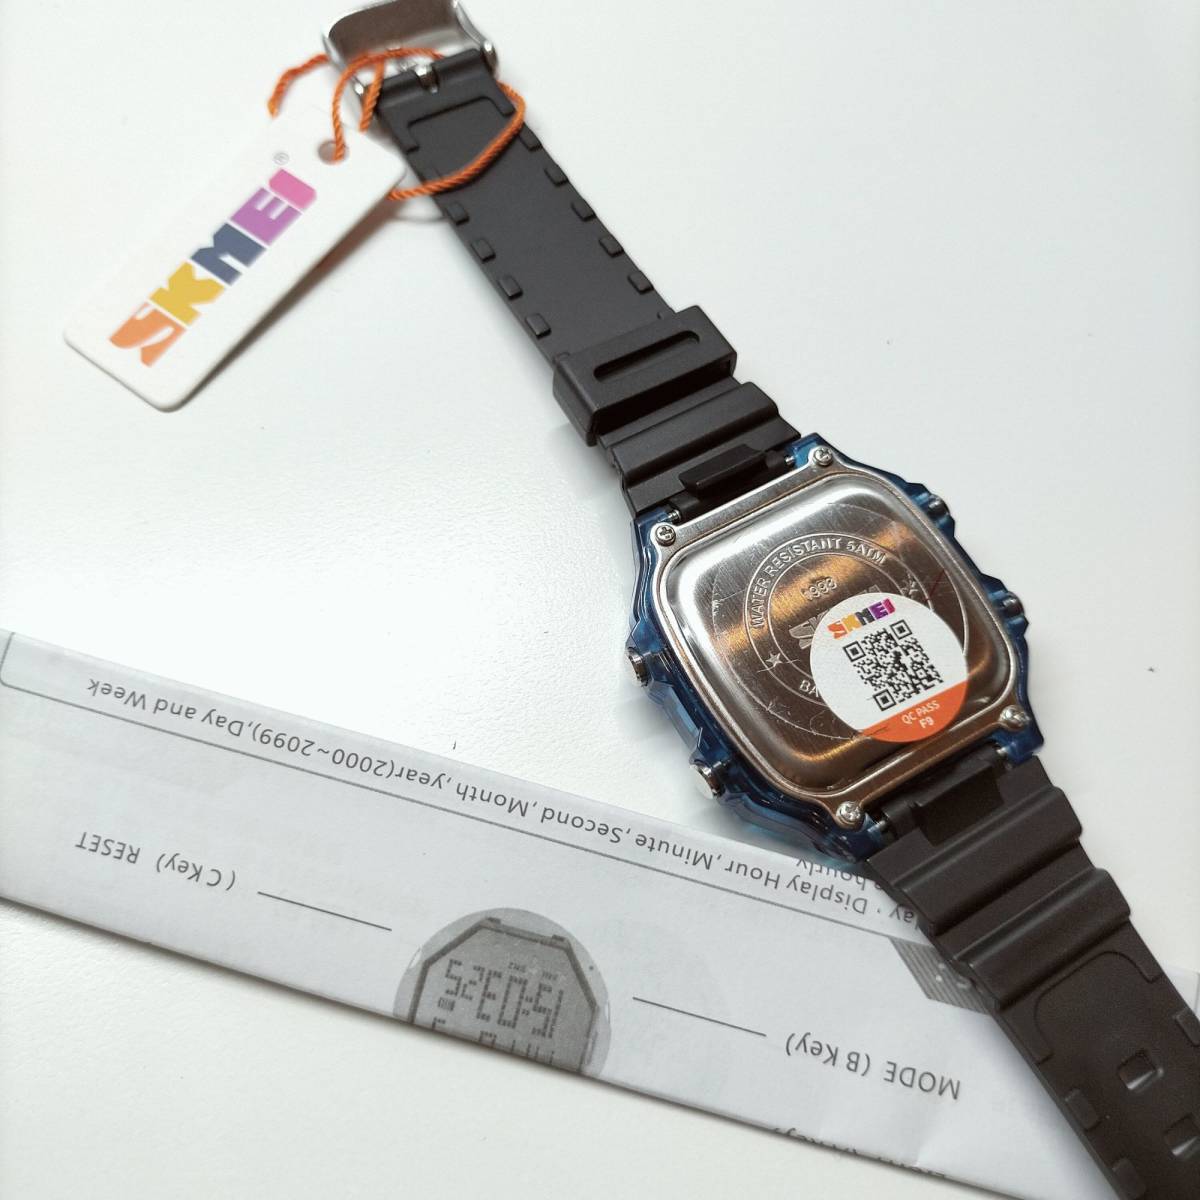 50m防水 デジタル腕時計 ダイバーズ スポーツ スケルトン透明ブルー青 水色 CASIOカシオチプカシAE-1200WHではありません_画像3